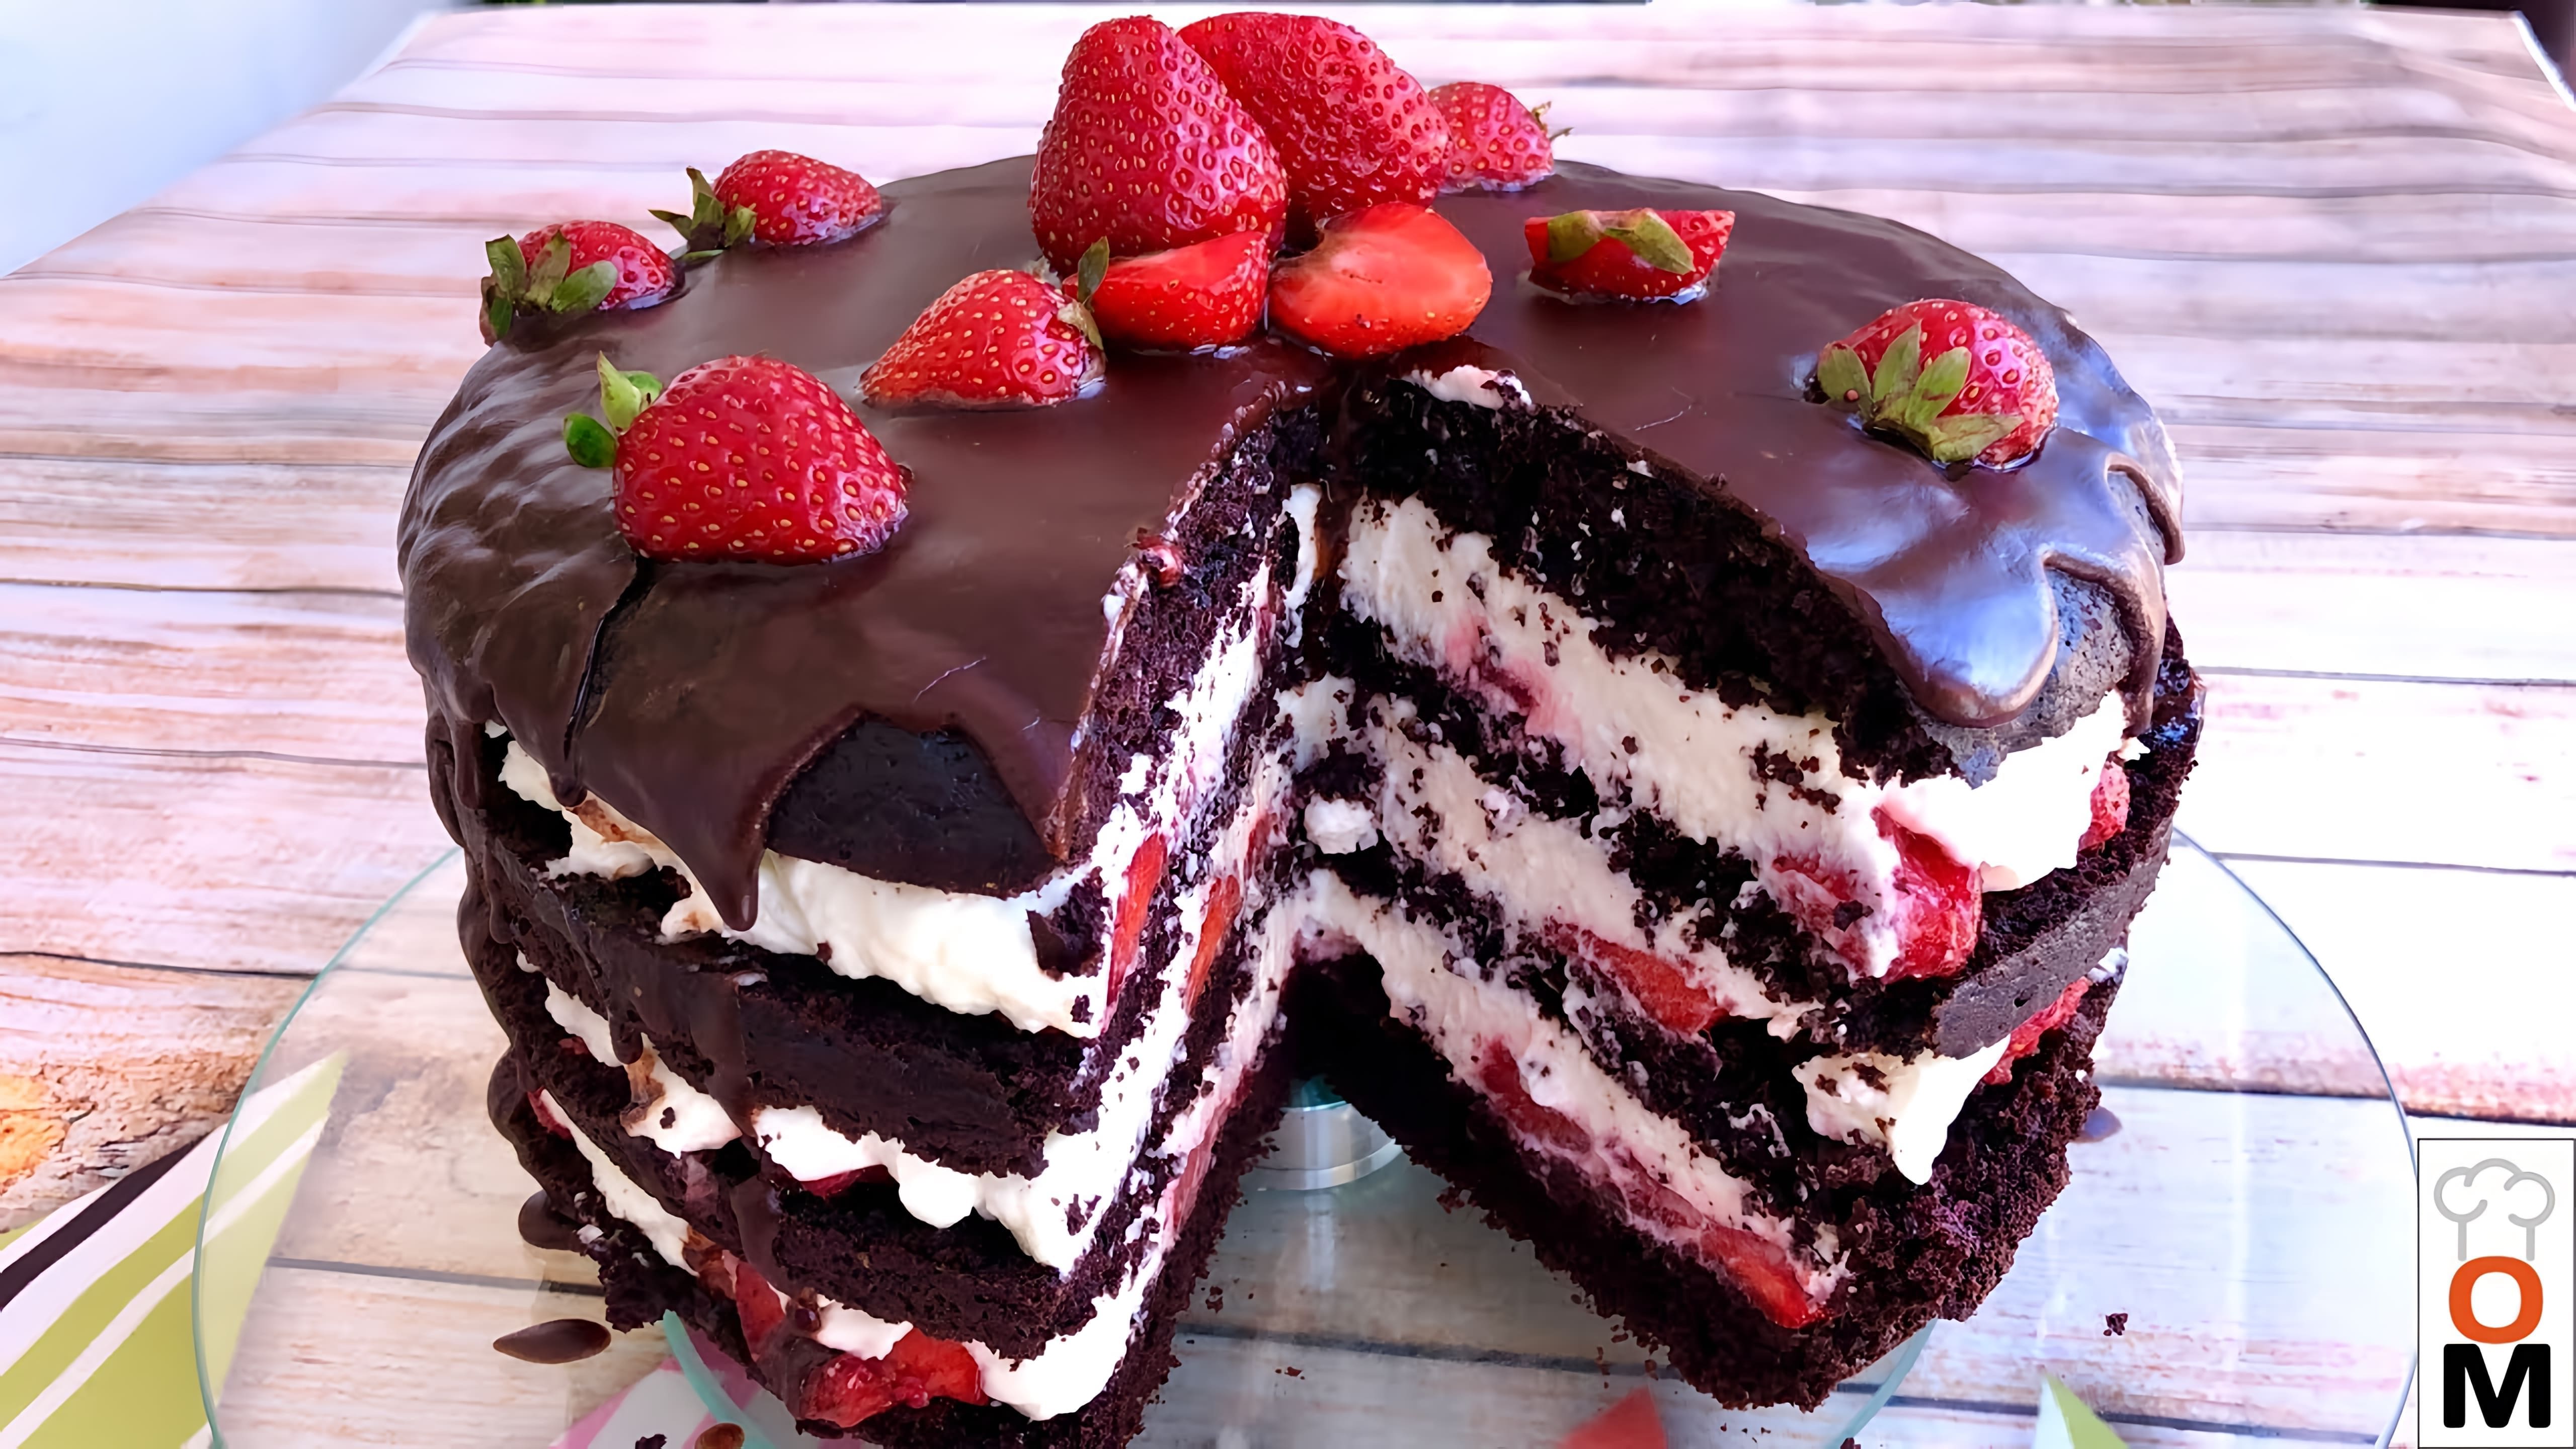 В этом видео демонстрируется рецепт шоколадно-клубничного торта "Нежность" с коржами на кефире